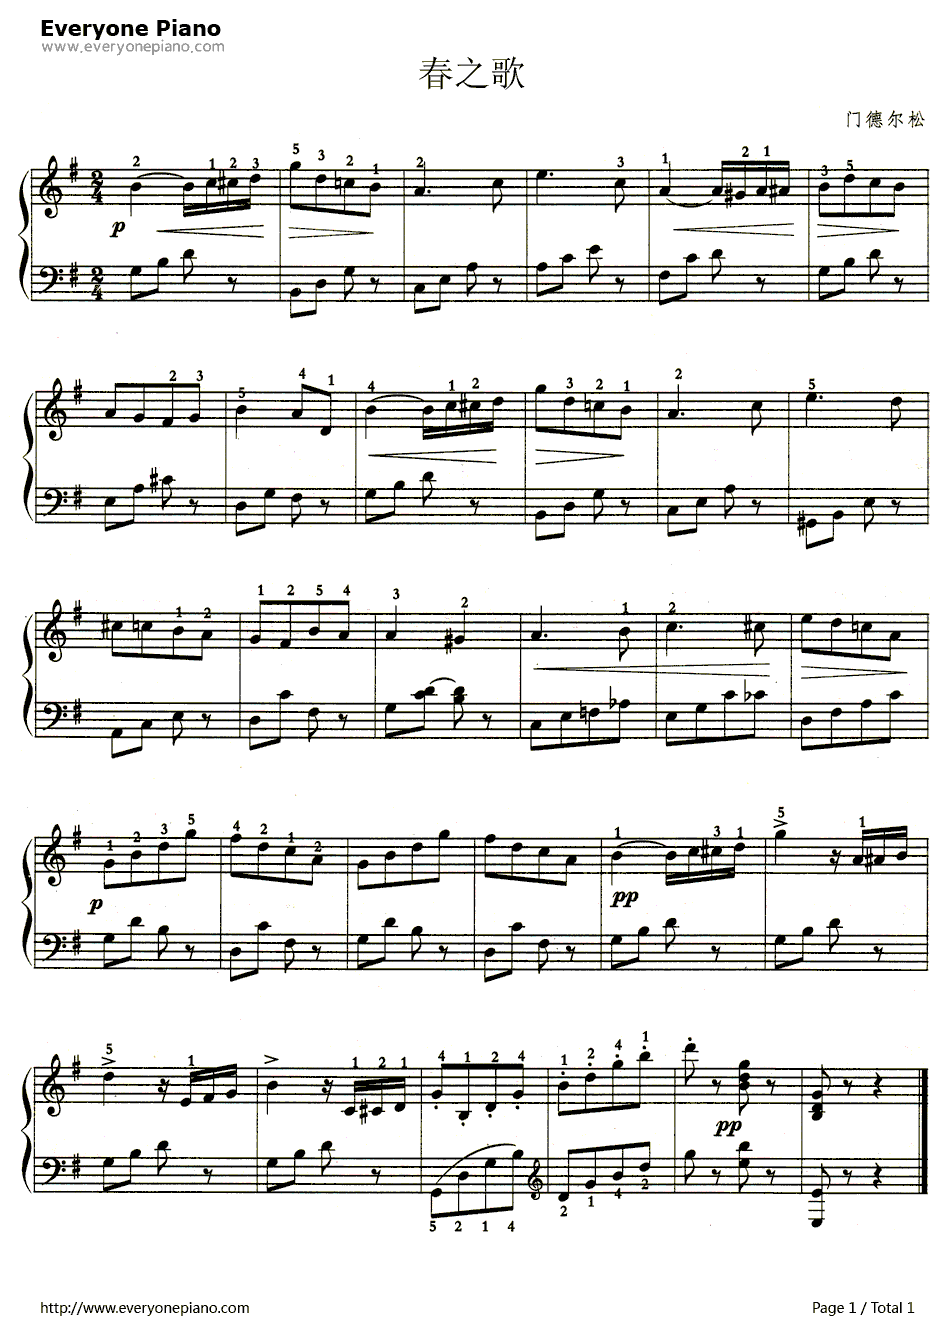 春之歌钢琴谱-门德尔松-门德尔松创作钢琴曲1